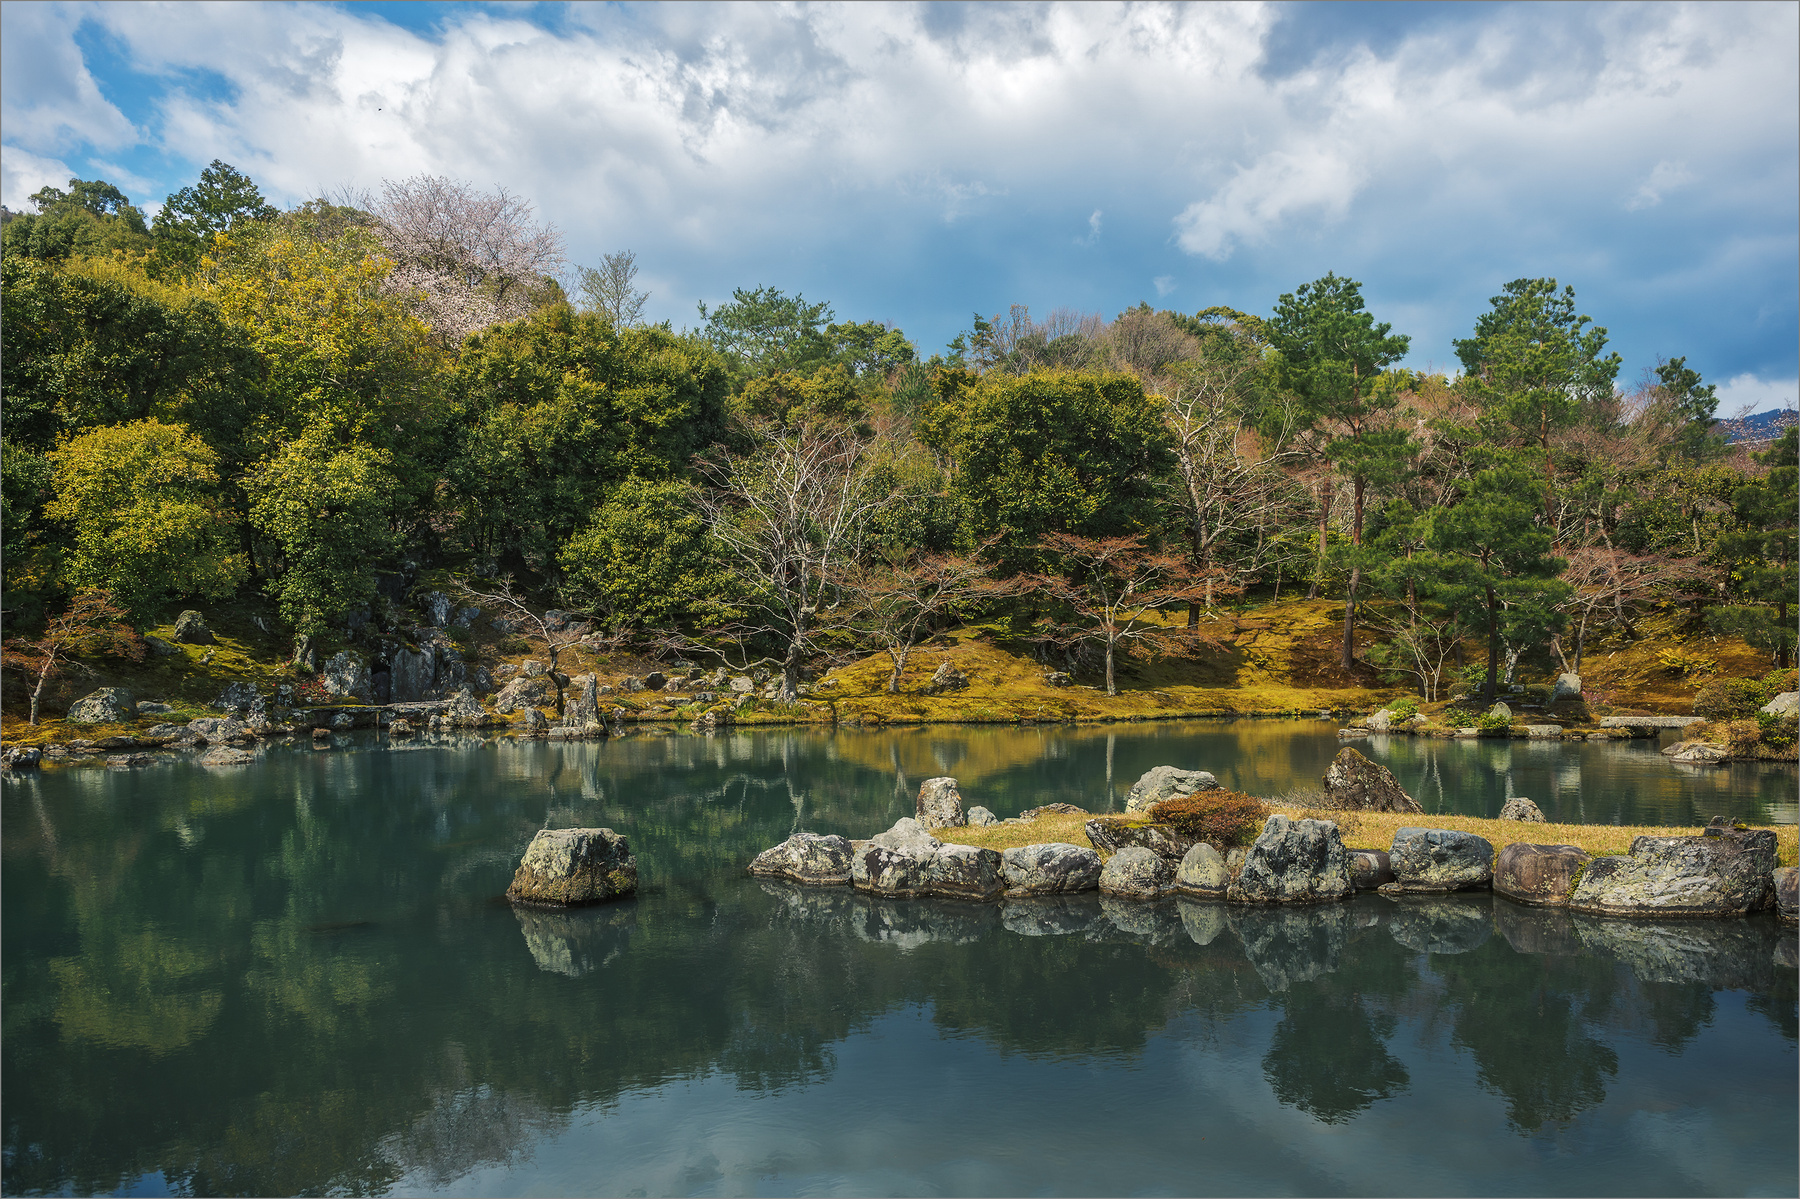 Камни как корабли бороздят водную гладь озеро камни Япония весна